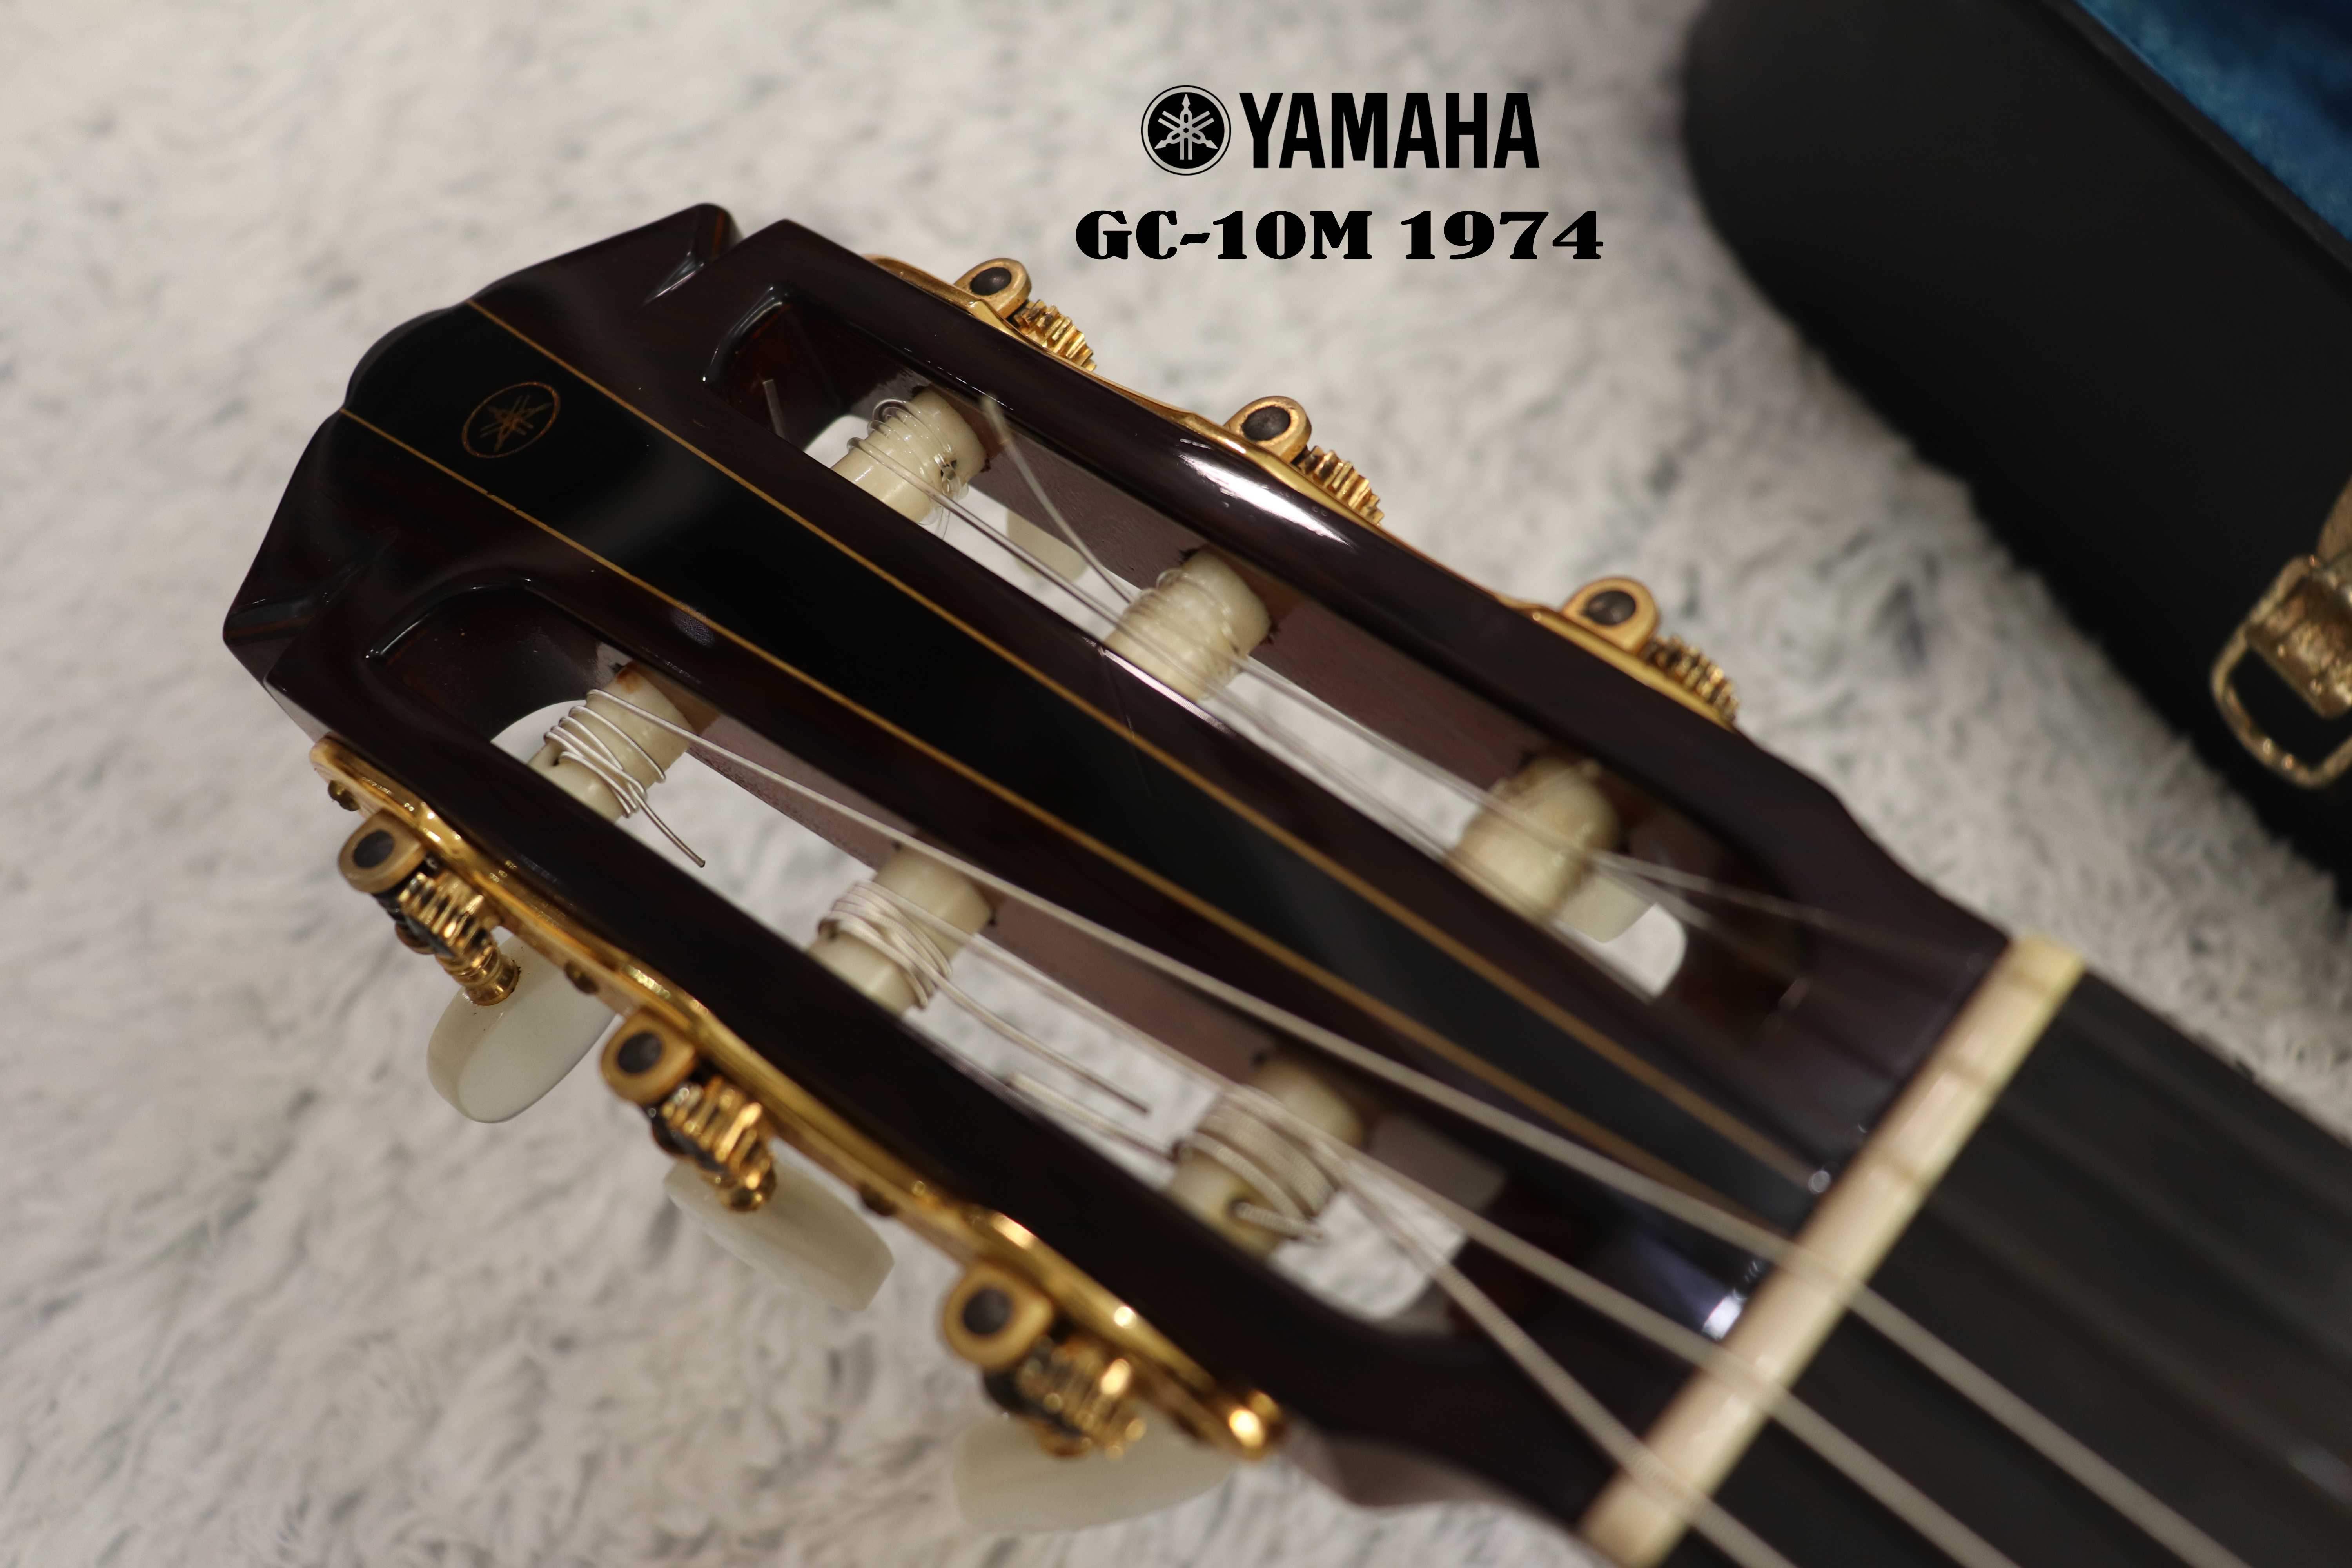 Classic YAMAHA GC-10M 1974